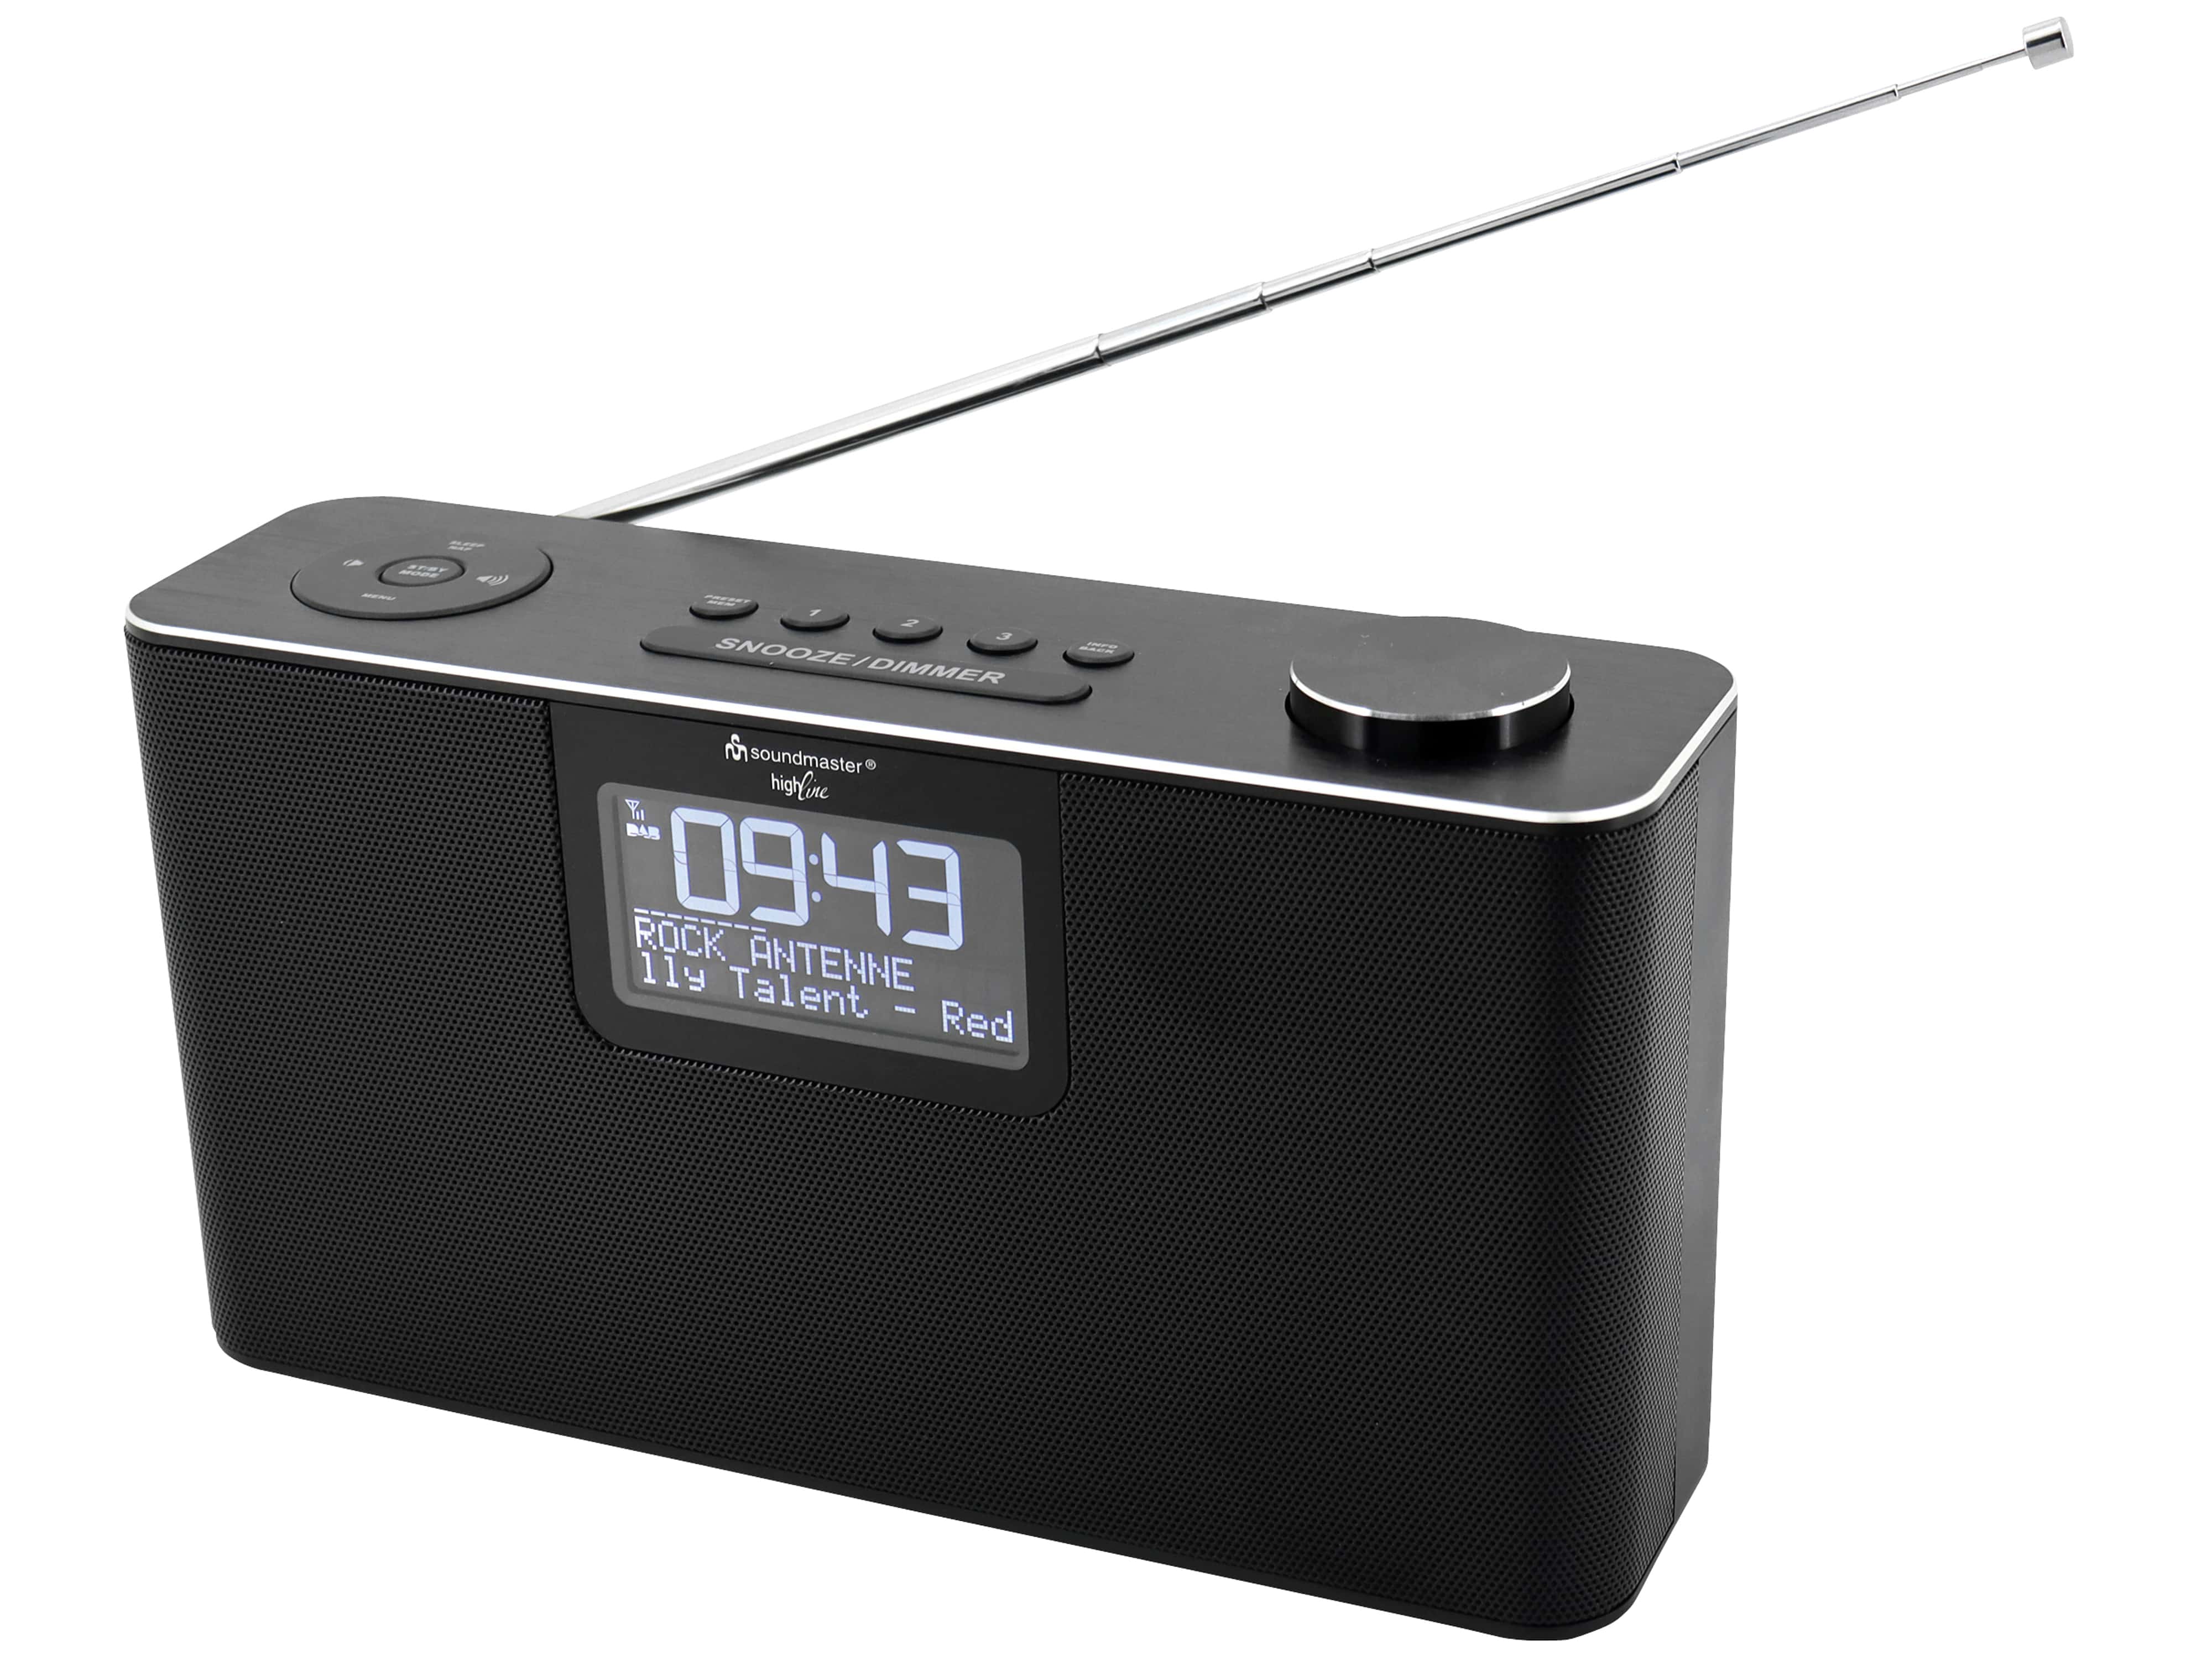 SOUNDMASTER DAB+/UKW Radio DAB700SW, USB, SD, MP3, Bluetooth, schwarz